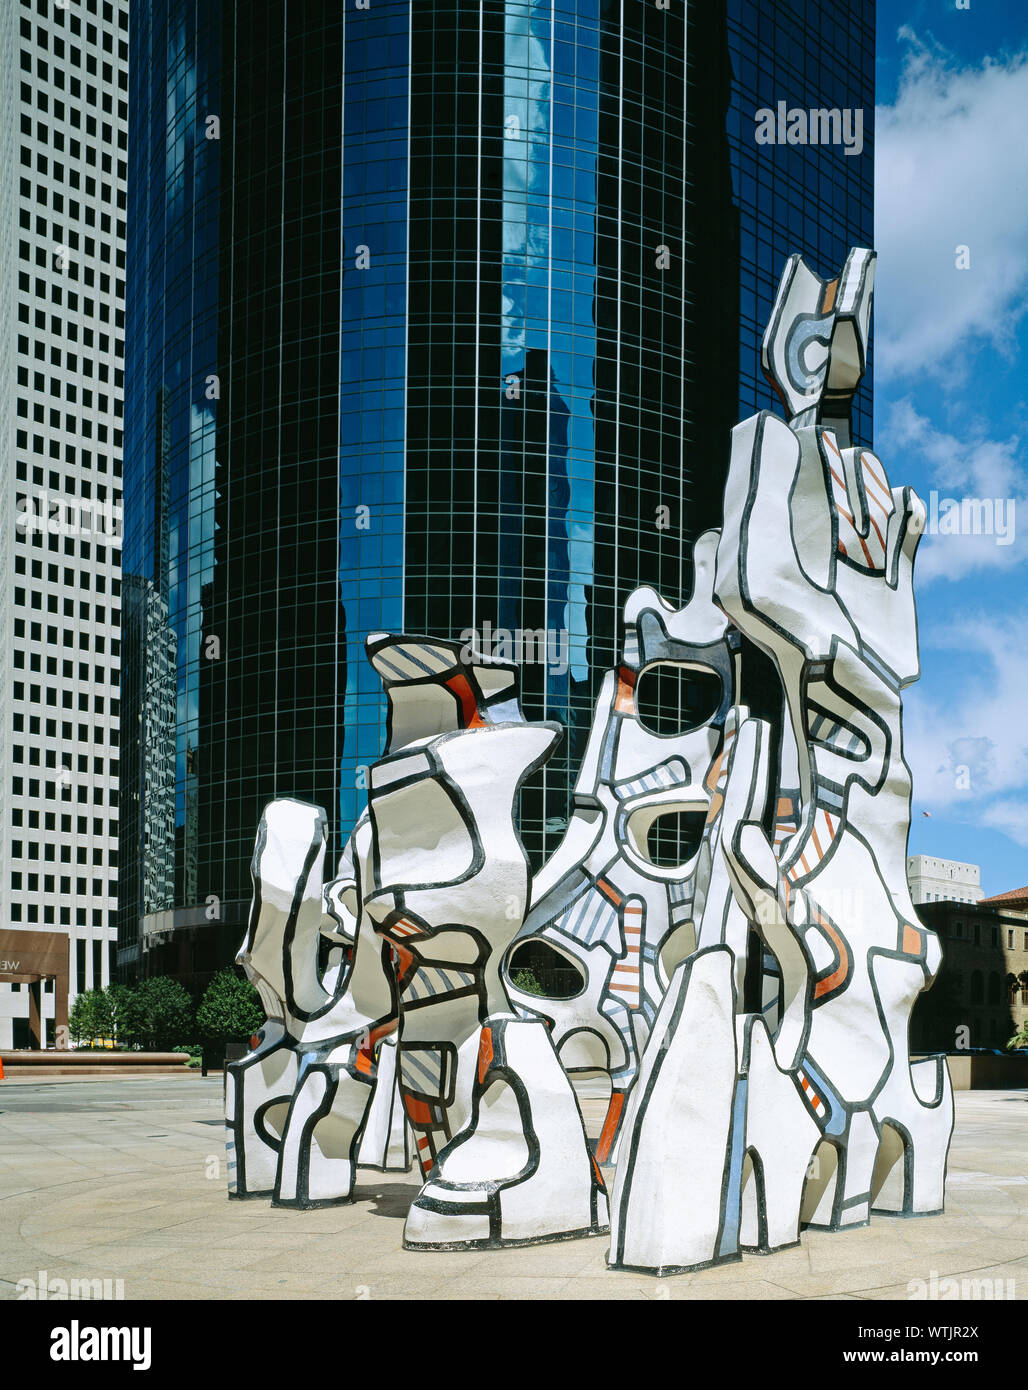 Monument au Fantome Art, Houston, Texas Stock Photo